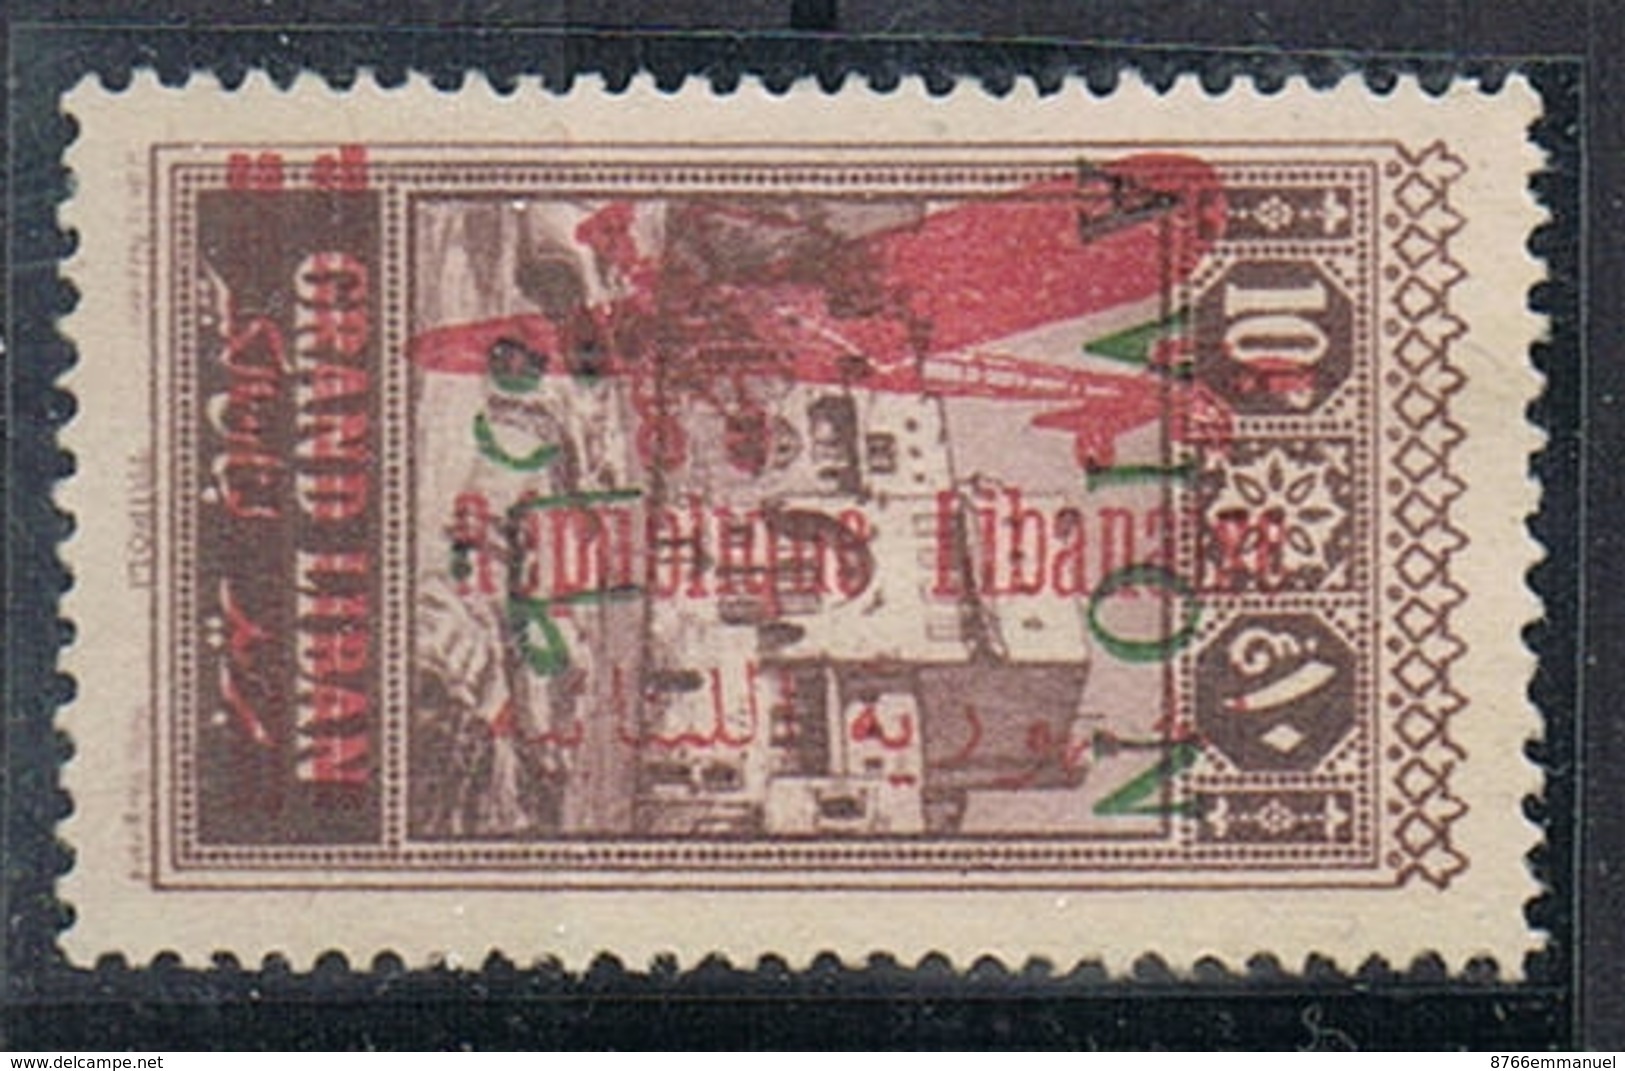 GRAND LIBAN AERIEN N°35a N*  Variété Surcharge Apposée Sur Timbre Aerien N°12 (surcharge Verte +rouge) - Posta Aerea